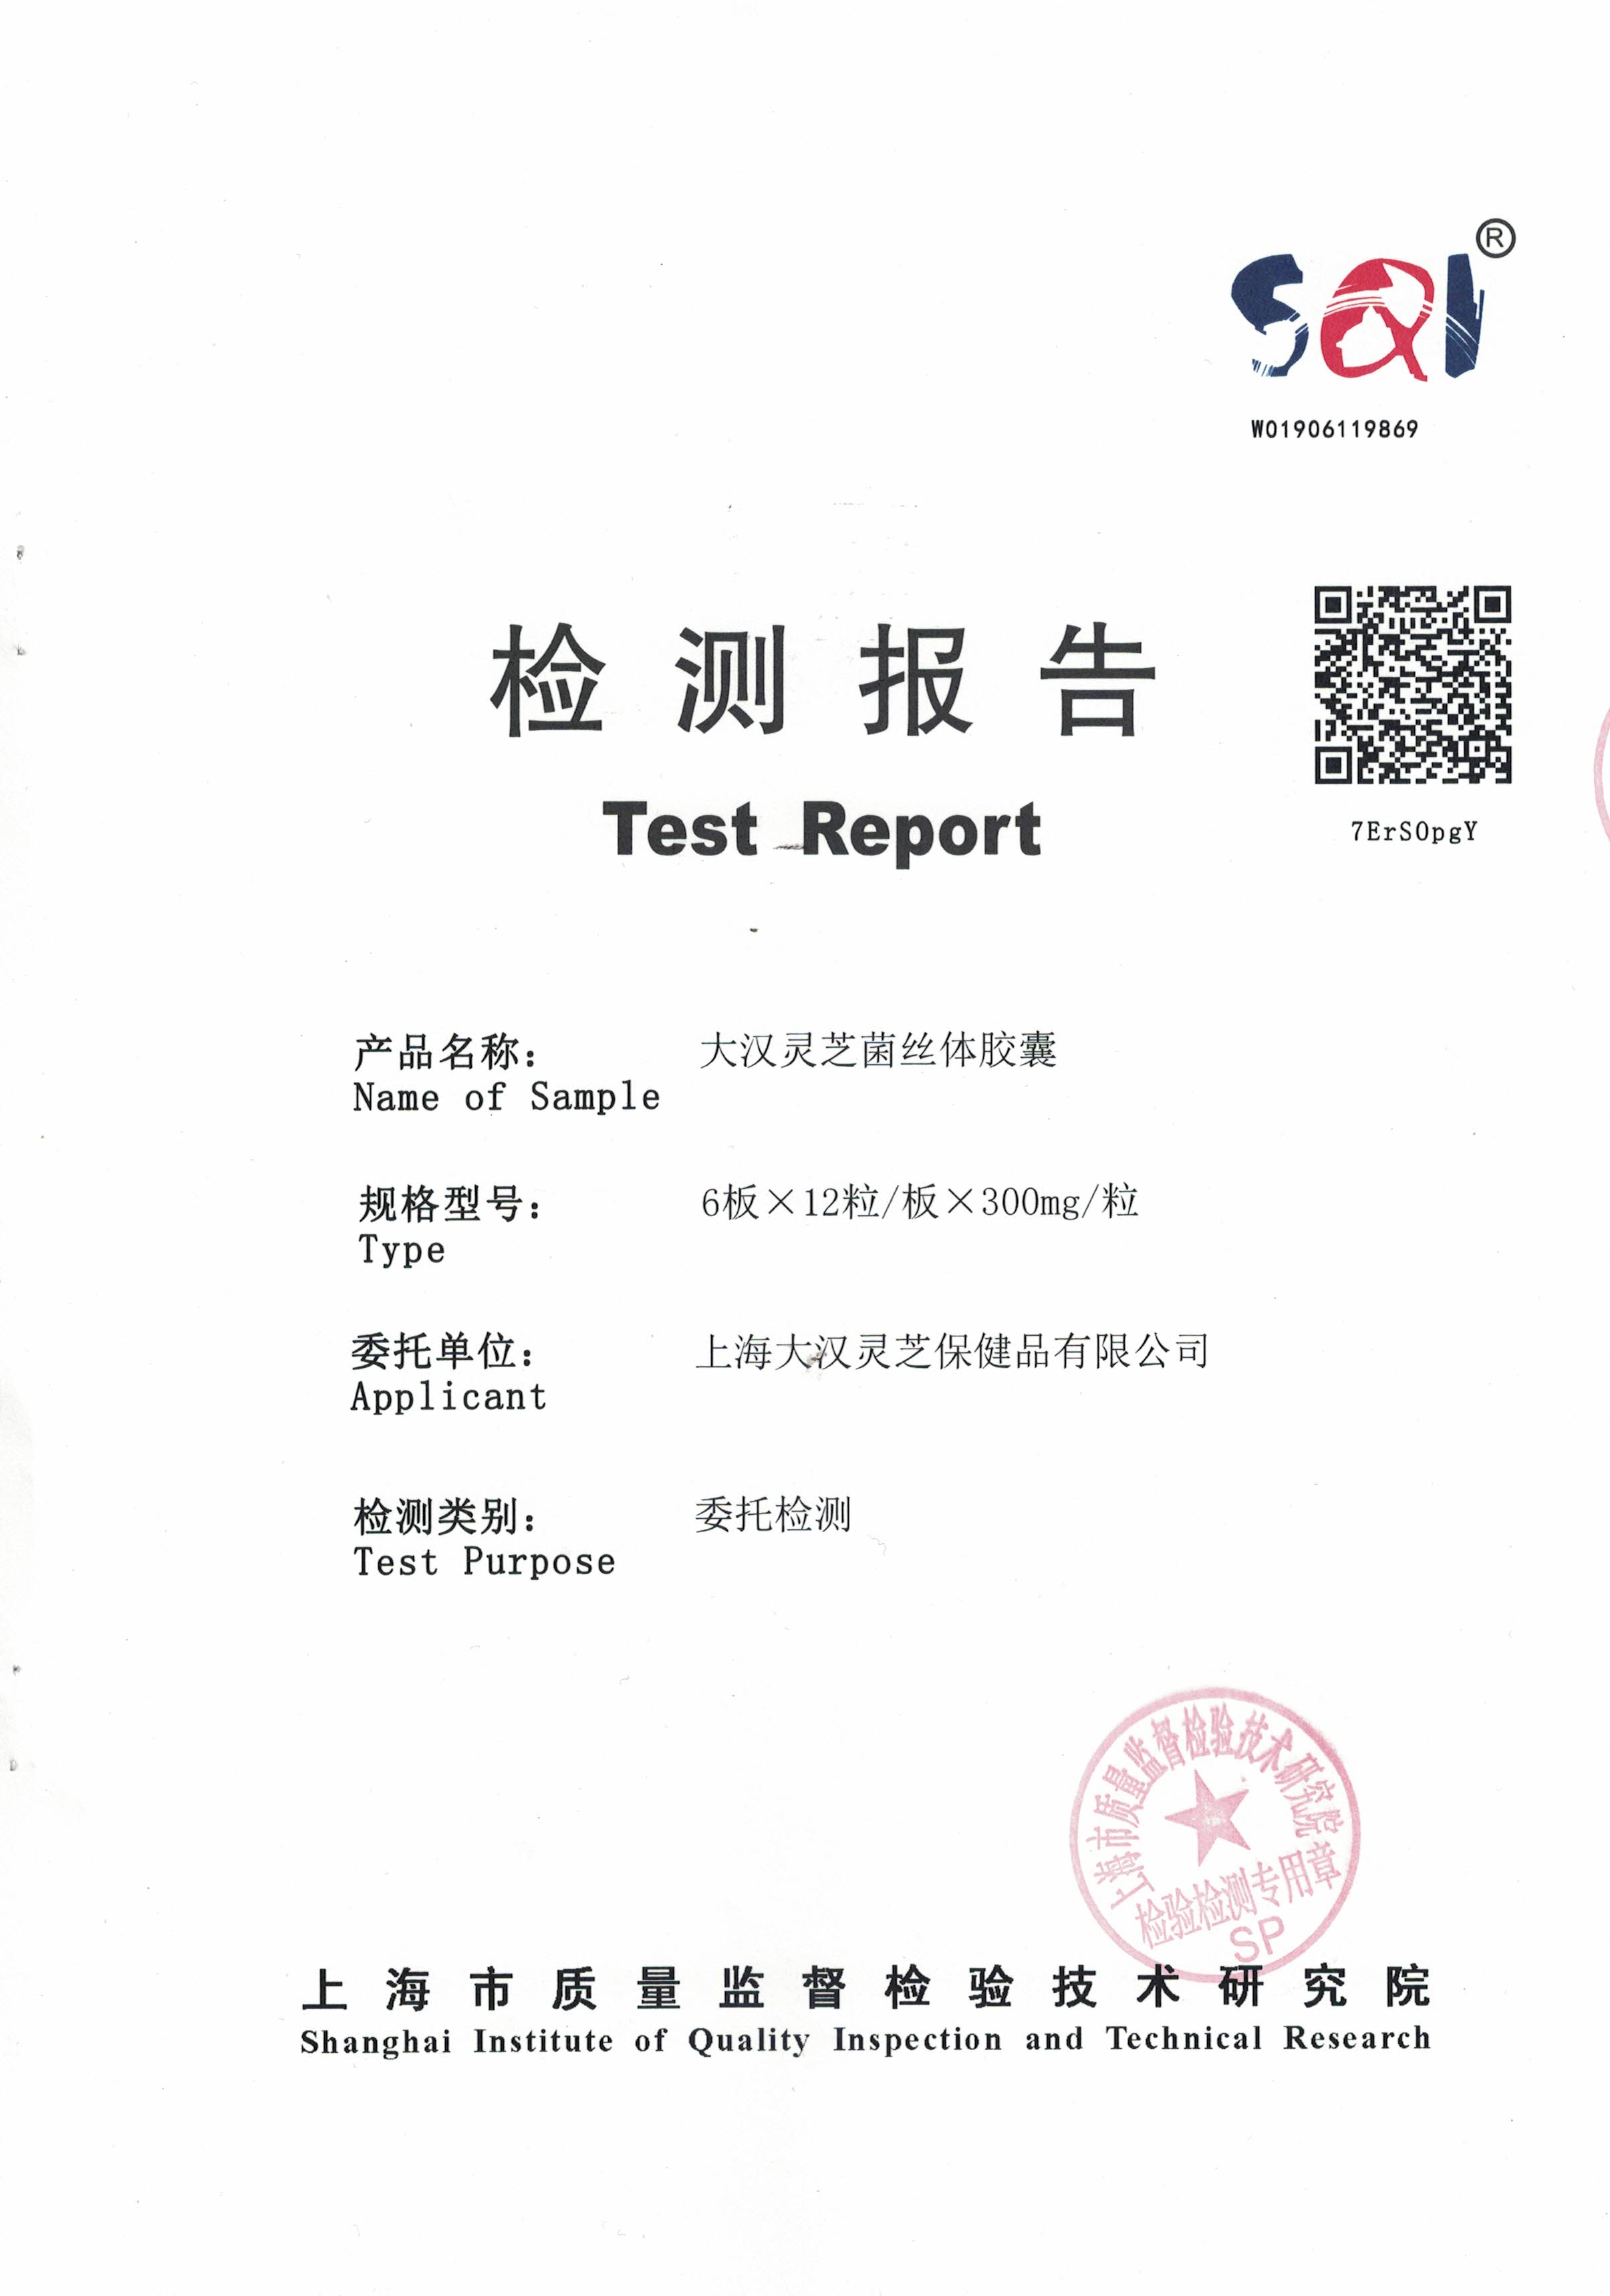 2019年 8月26日 大汉灵芝菌丝体胶囊 产品检测报告